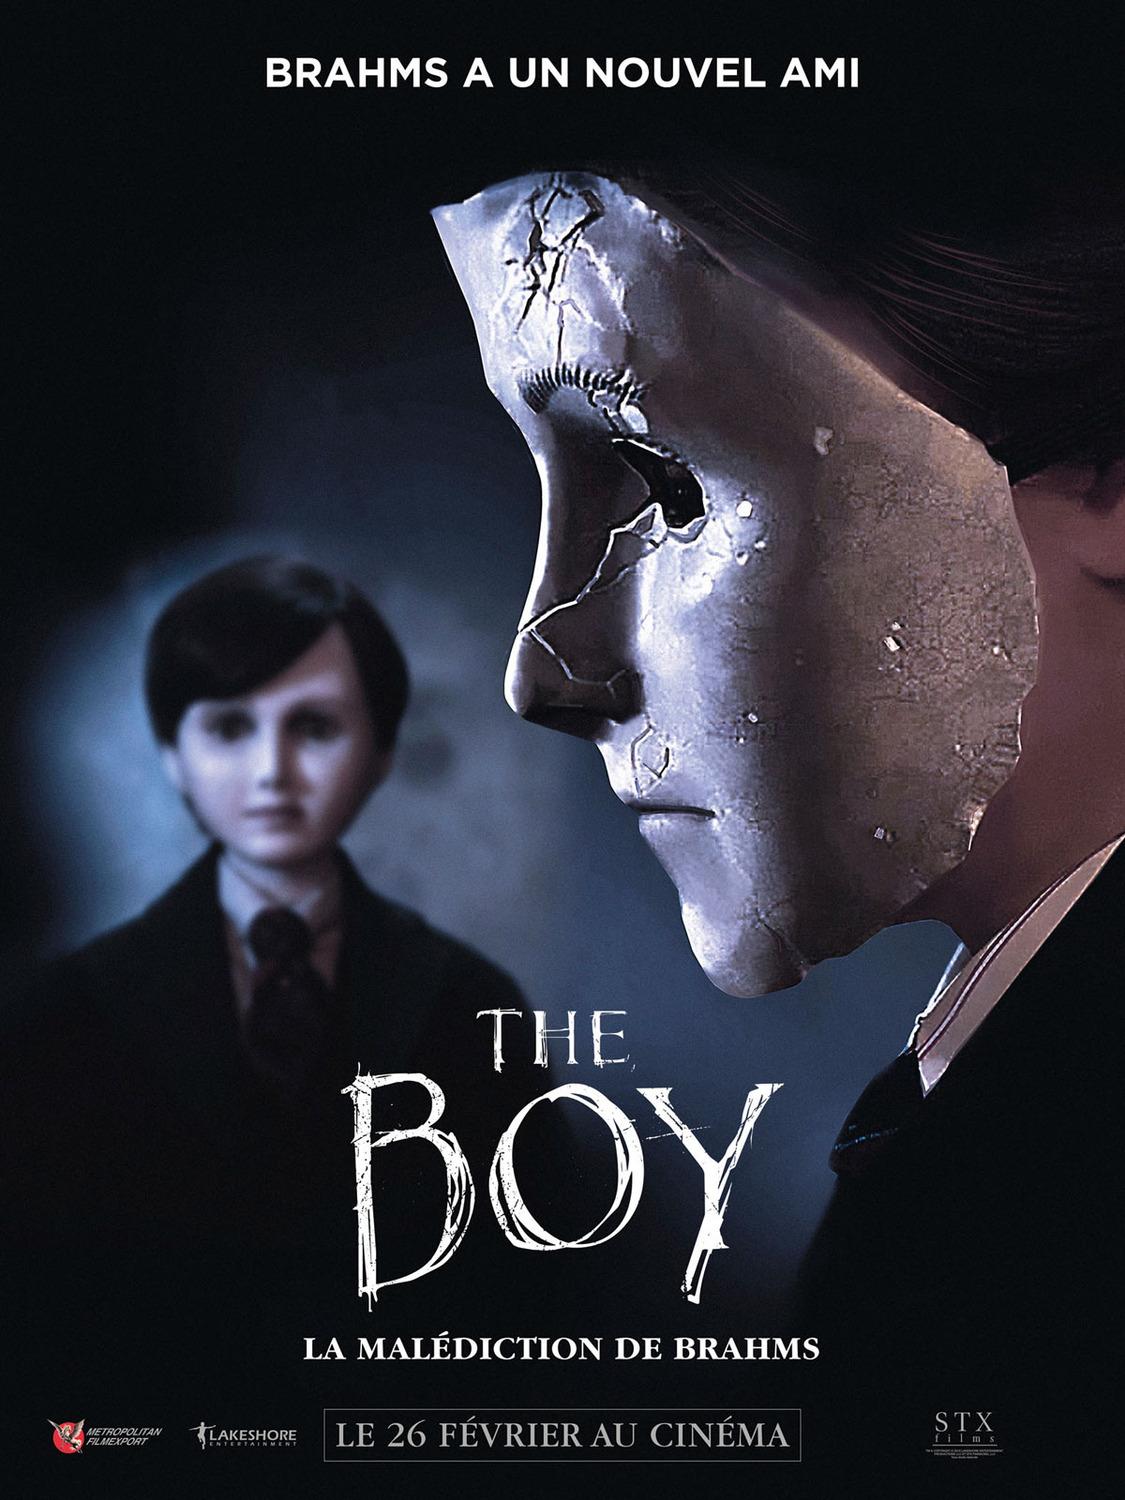 Постер фильма Кукла 2: Брамс | Brahms: The Boy II